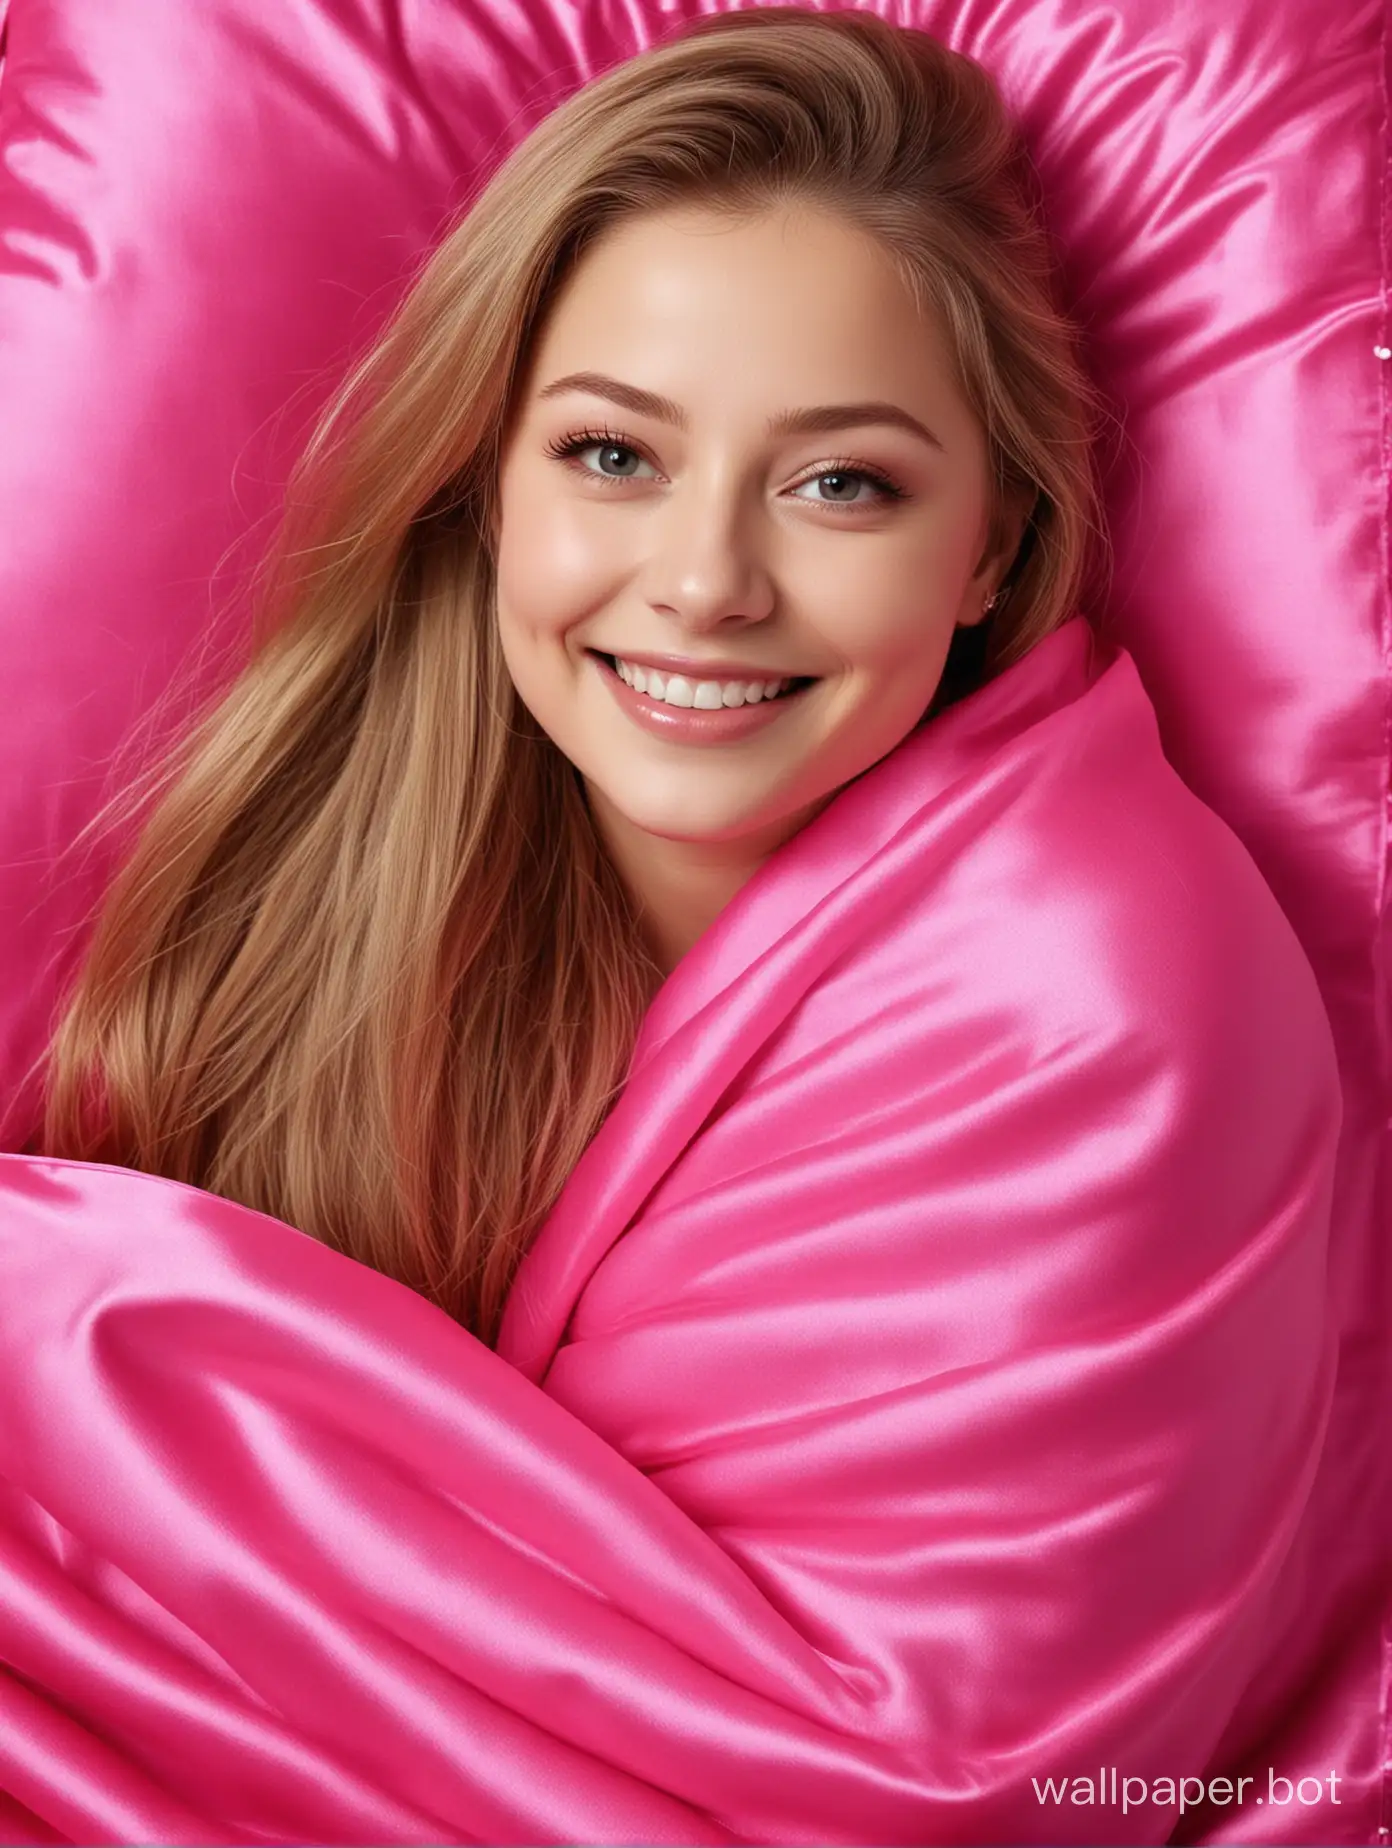 Yulia-Lipnitskaya-Smiling-Under-Hot-Pink-Silk-Blanket-and-Pillow